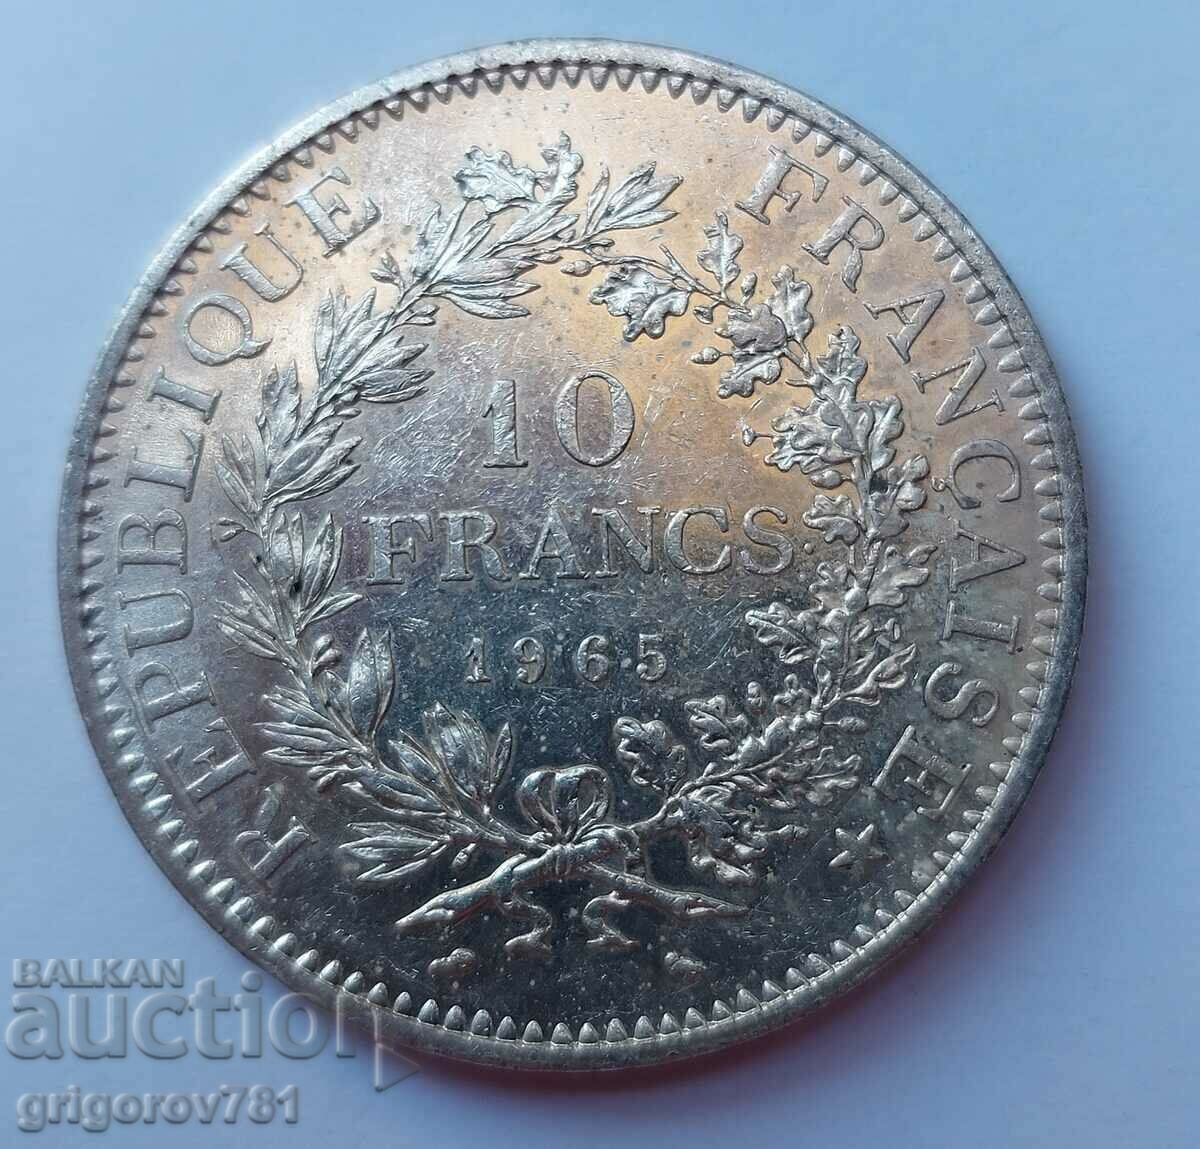 Ασημένιο 10 φράγκων Γαλλία 1965 - ασημένιο νόμισμα # 4